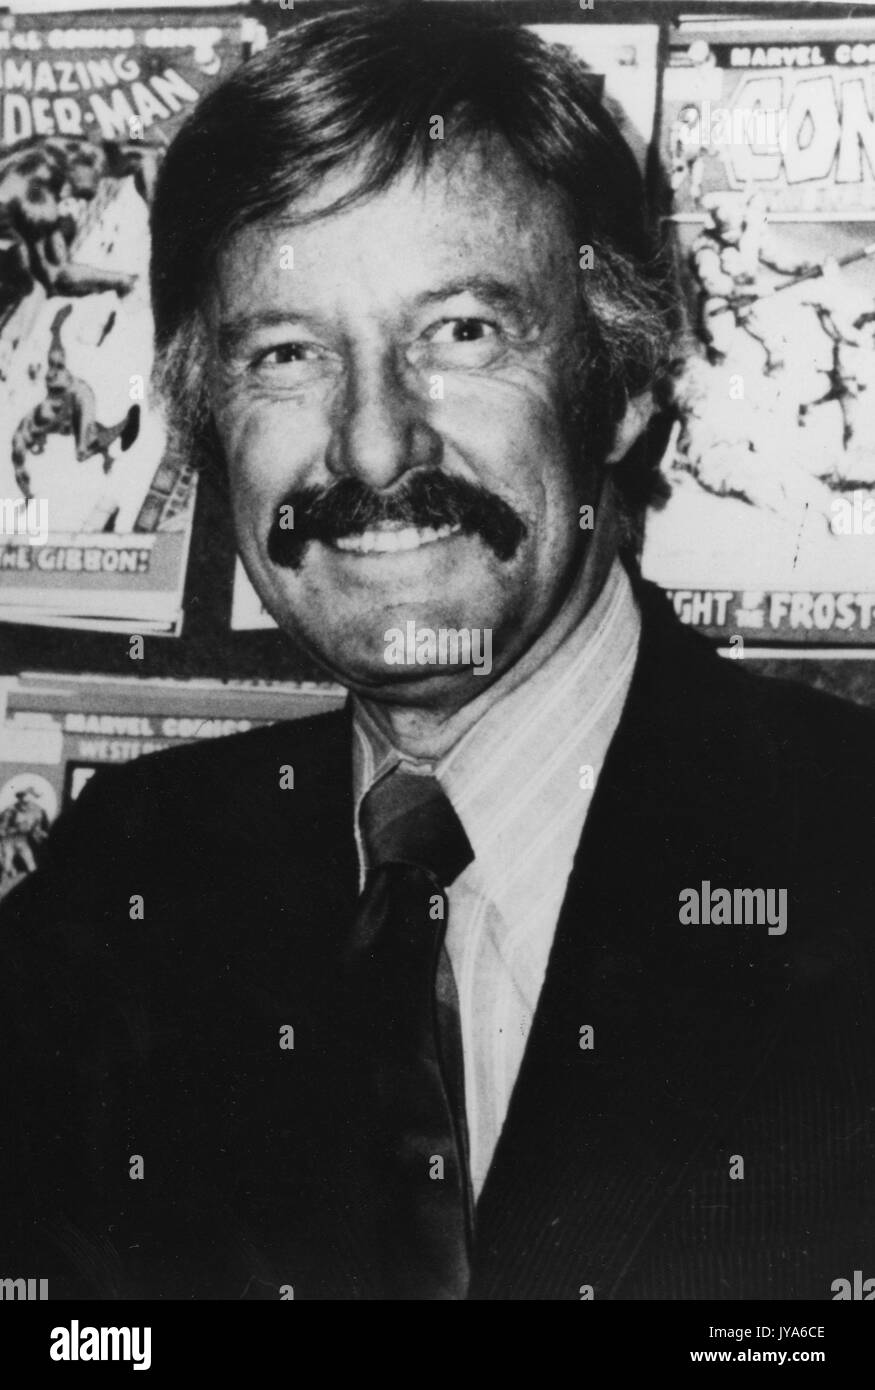 Portrait de l'auteur de comics, Stan Lee, portant un costume sombre et une cravate avec une chemise rayée, avec une expression du visage souriant, debout en face de nombreux comic books de sa création. 1975. Banque D'Images